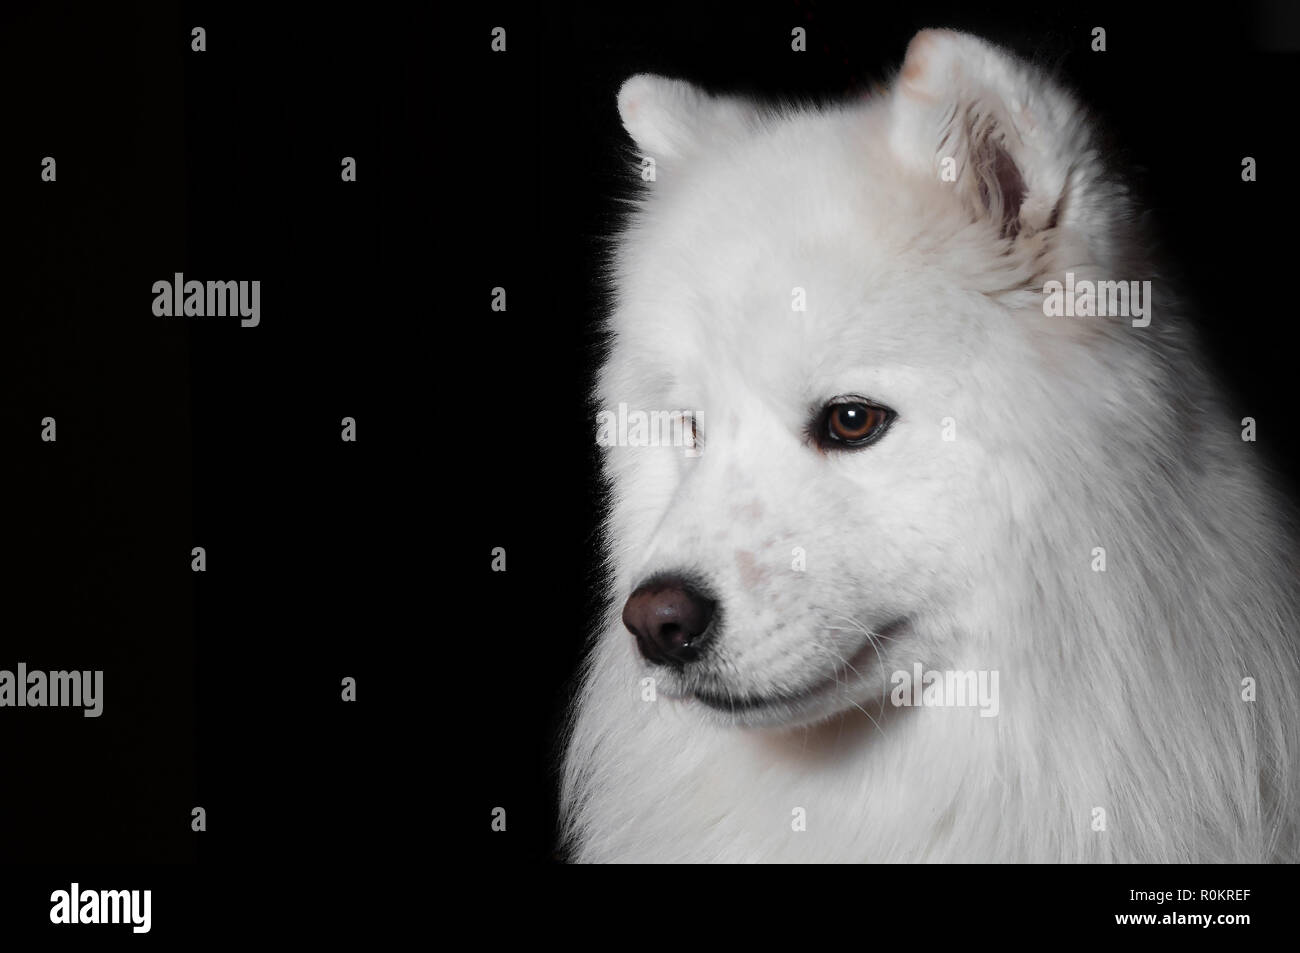 Closeup Portrait Of Purebred White Fluffy Samoyed Dog Sitting Isolated Black Background Stock Photo Alamy